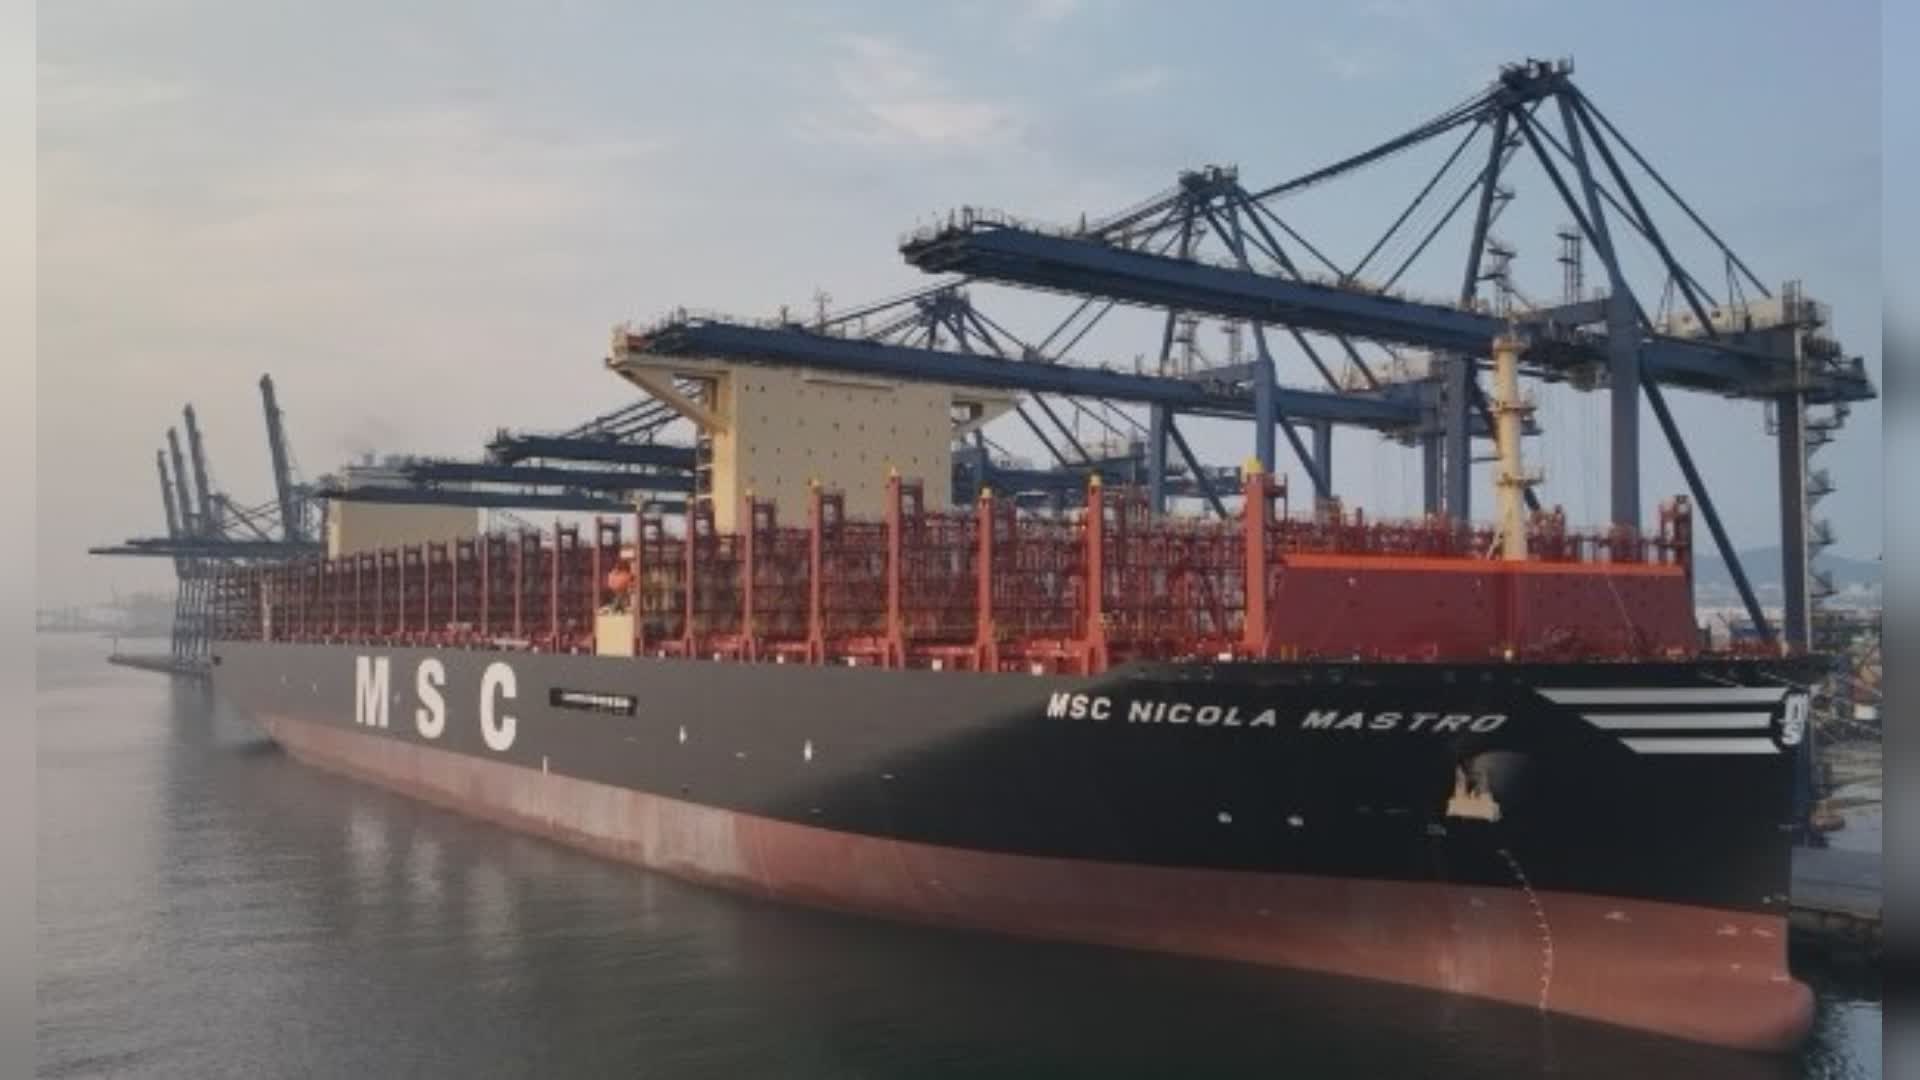 Il porto di La Spezia accoglie la "Nicola Mastro": la portacontainer di MSC, tra le più grandi al mondo, tocca per la prima volta un gateway italiano